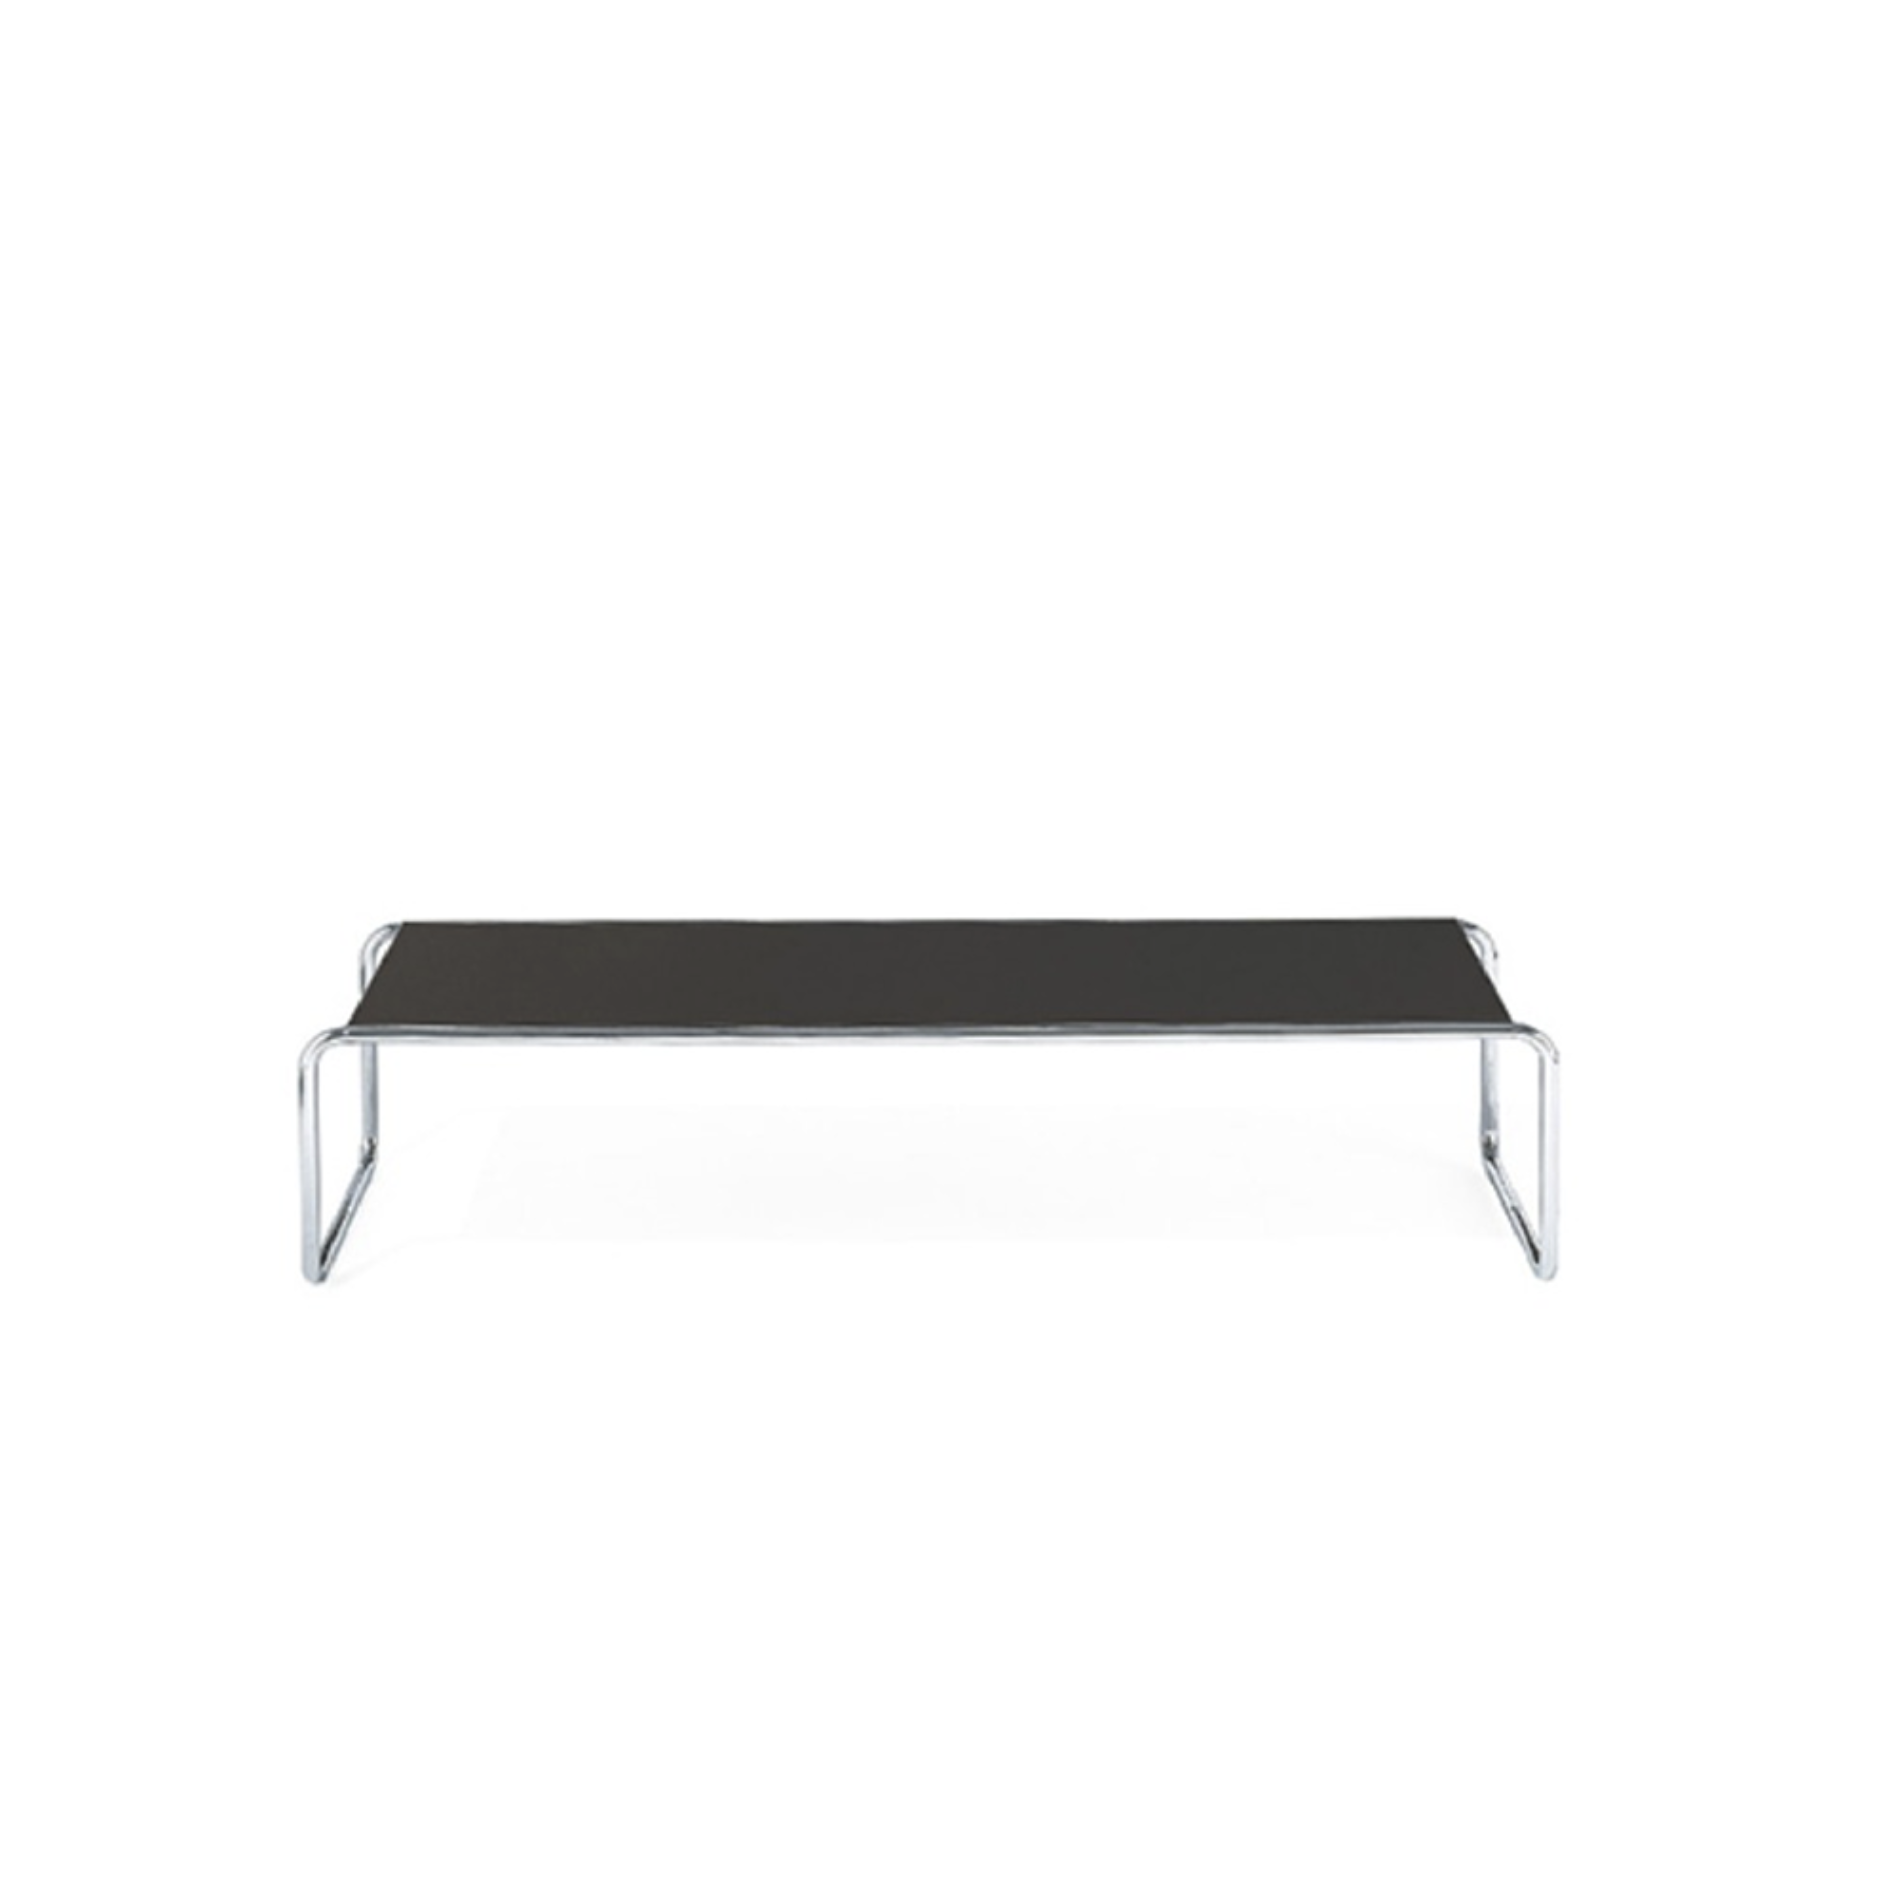 TECTA [Outlet|DP] K1C Oblique Couch Table - Black 125Cm